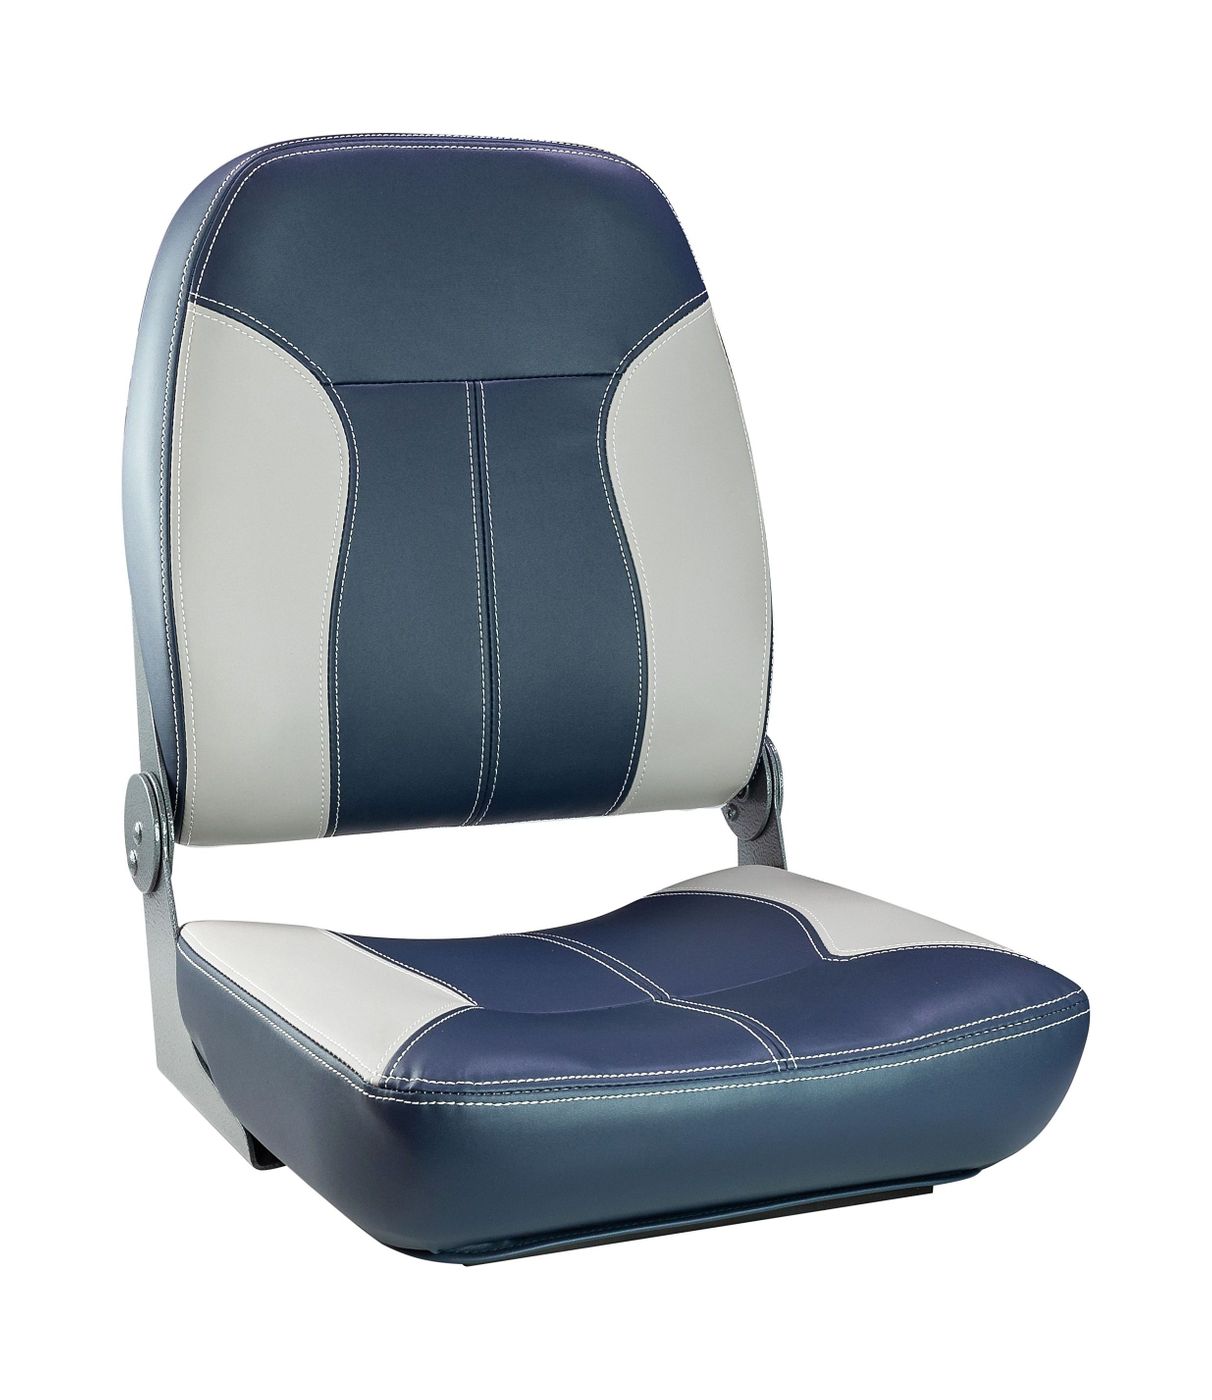 Кресло складное мягкое SPORT с высокой спинкой, синий/серый 1040513 кресло складное мягкое skipper серый синий 1061019